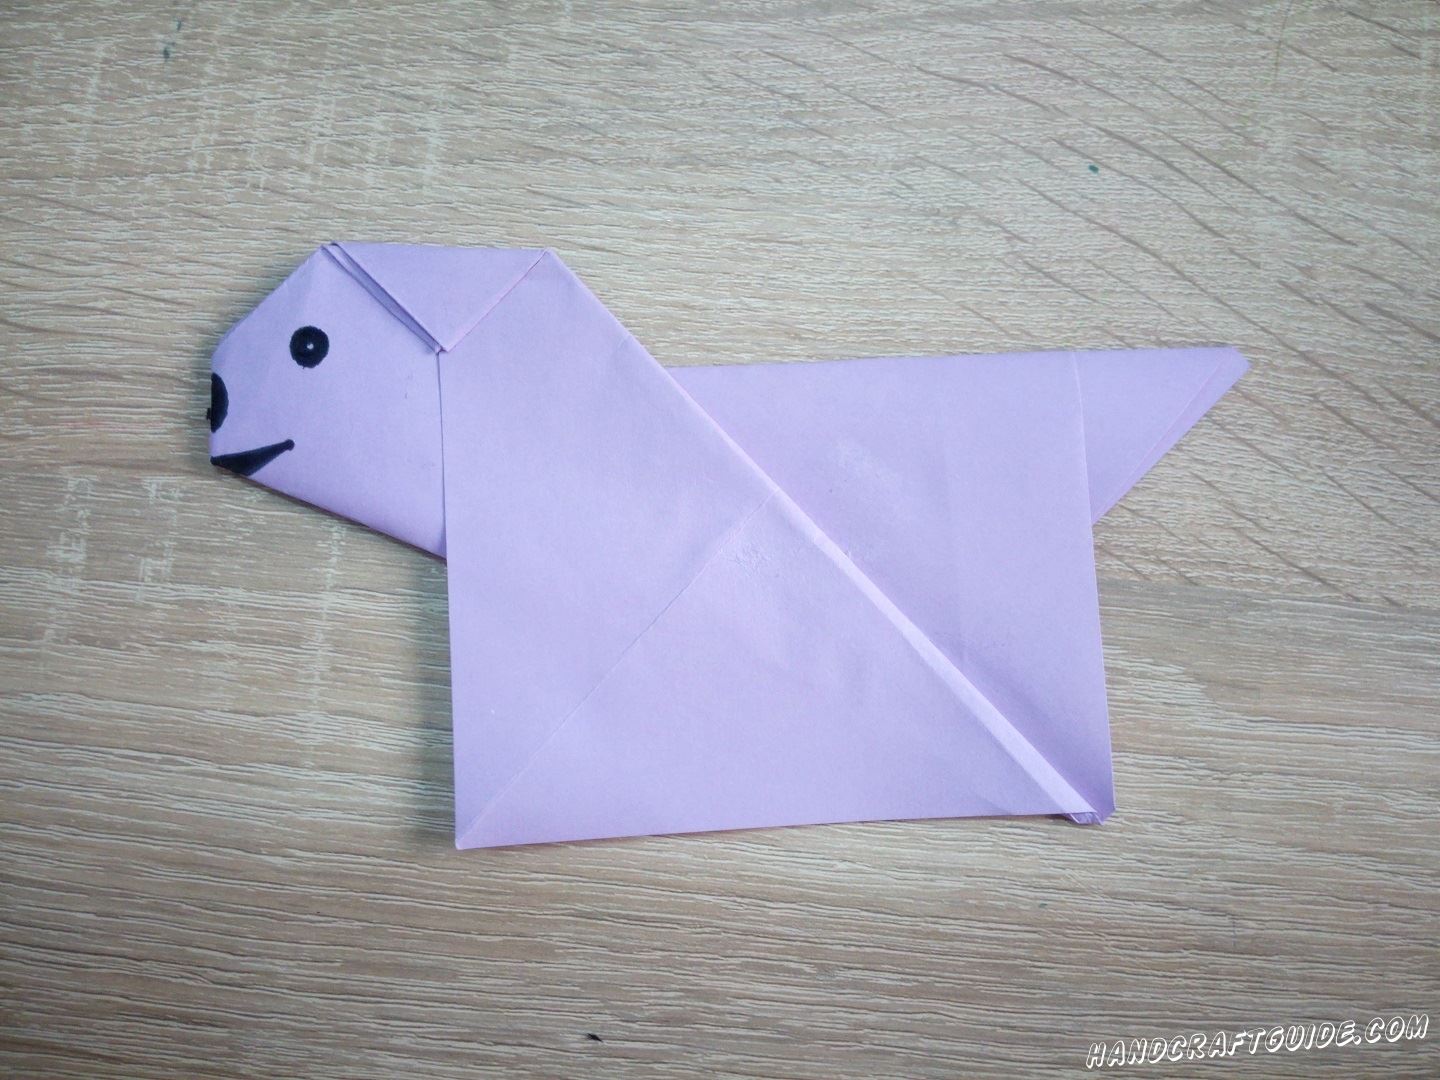 Cделаем собачку из цветной бумаги, с помощью техники оригами. 